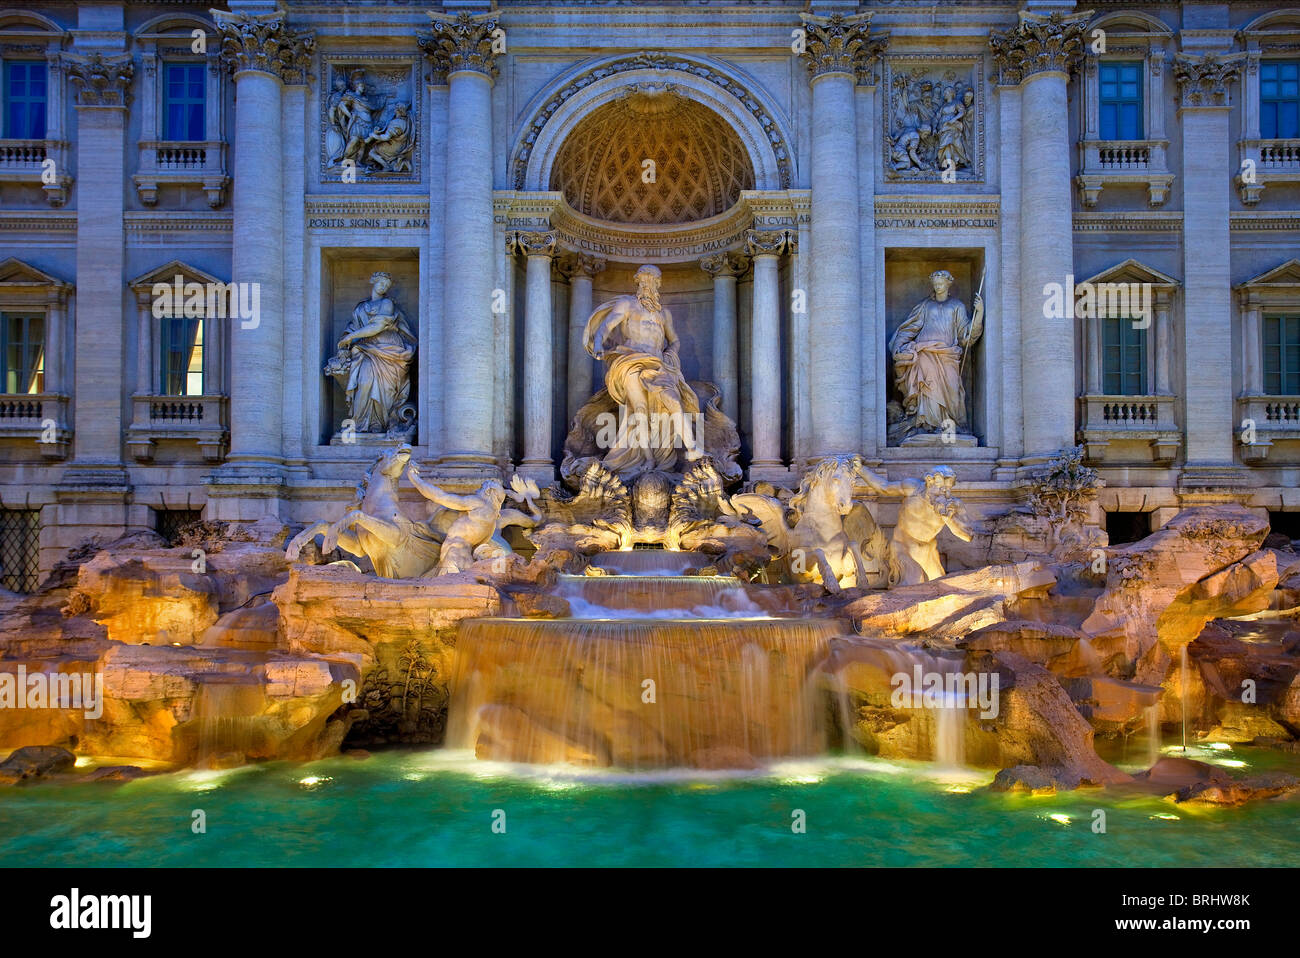 Italy, Rome, Trevi Fountain at Night Stock Photo